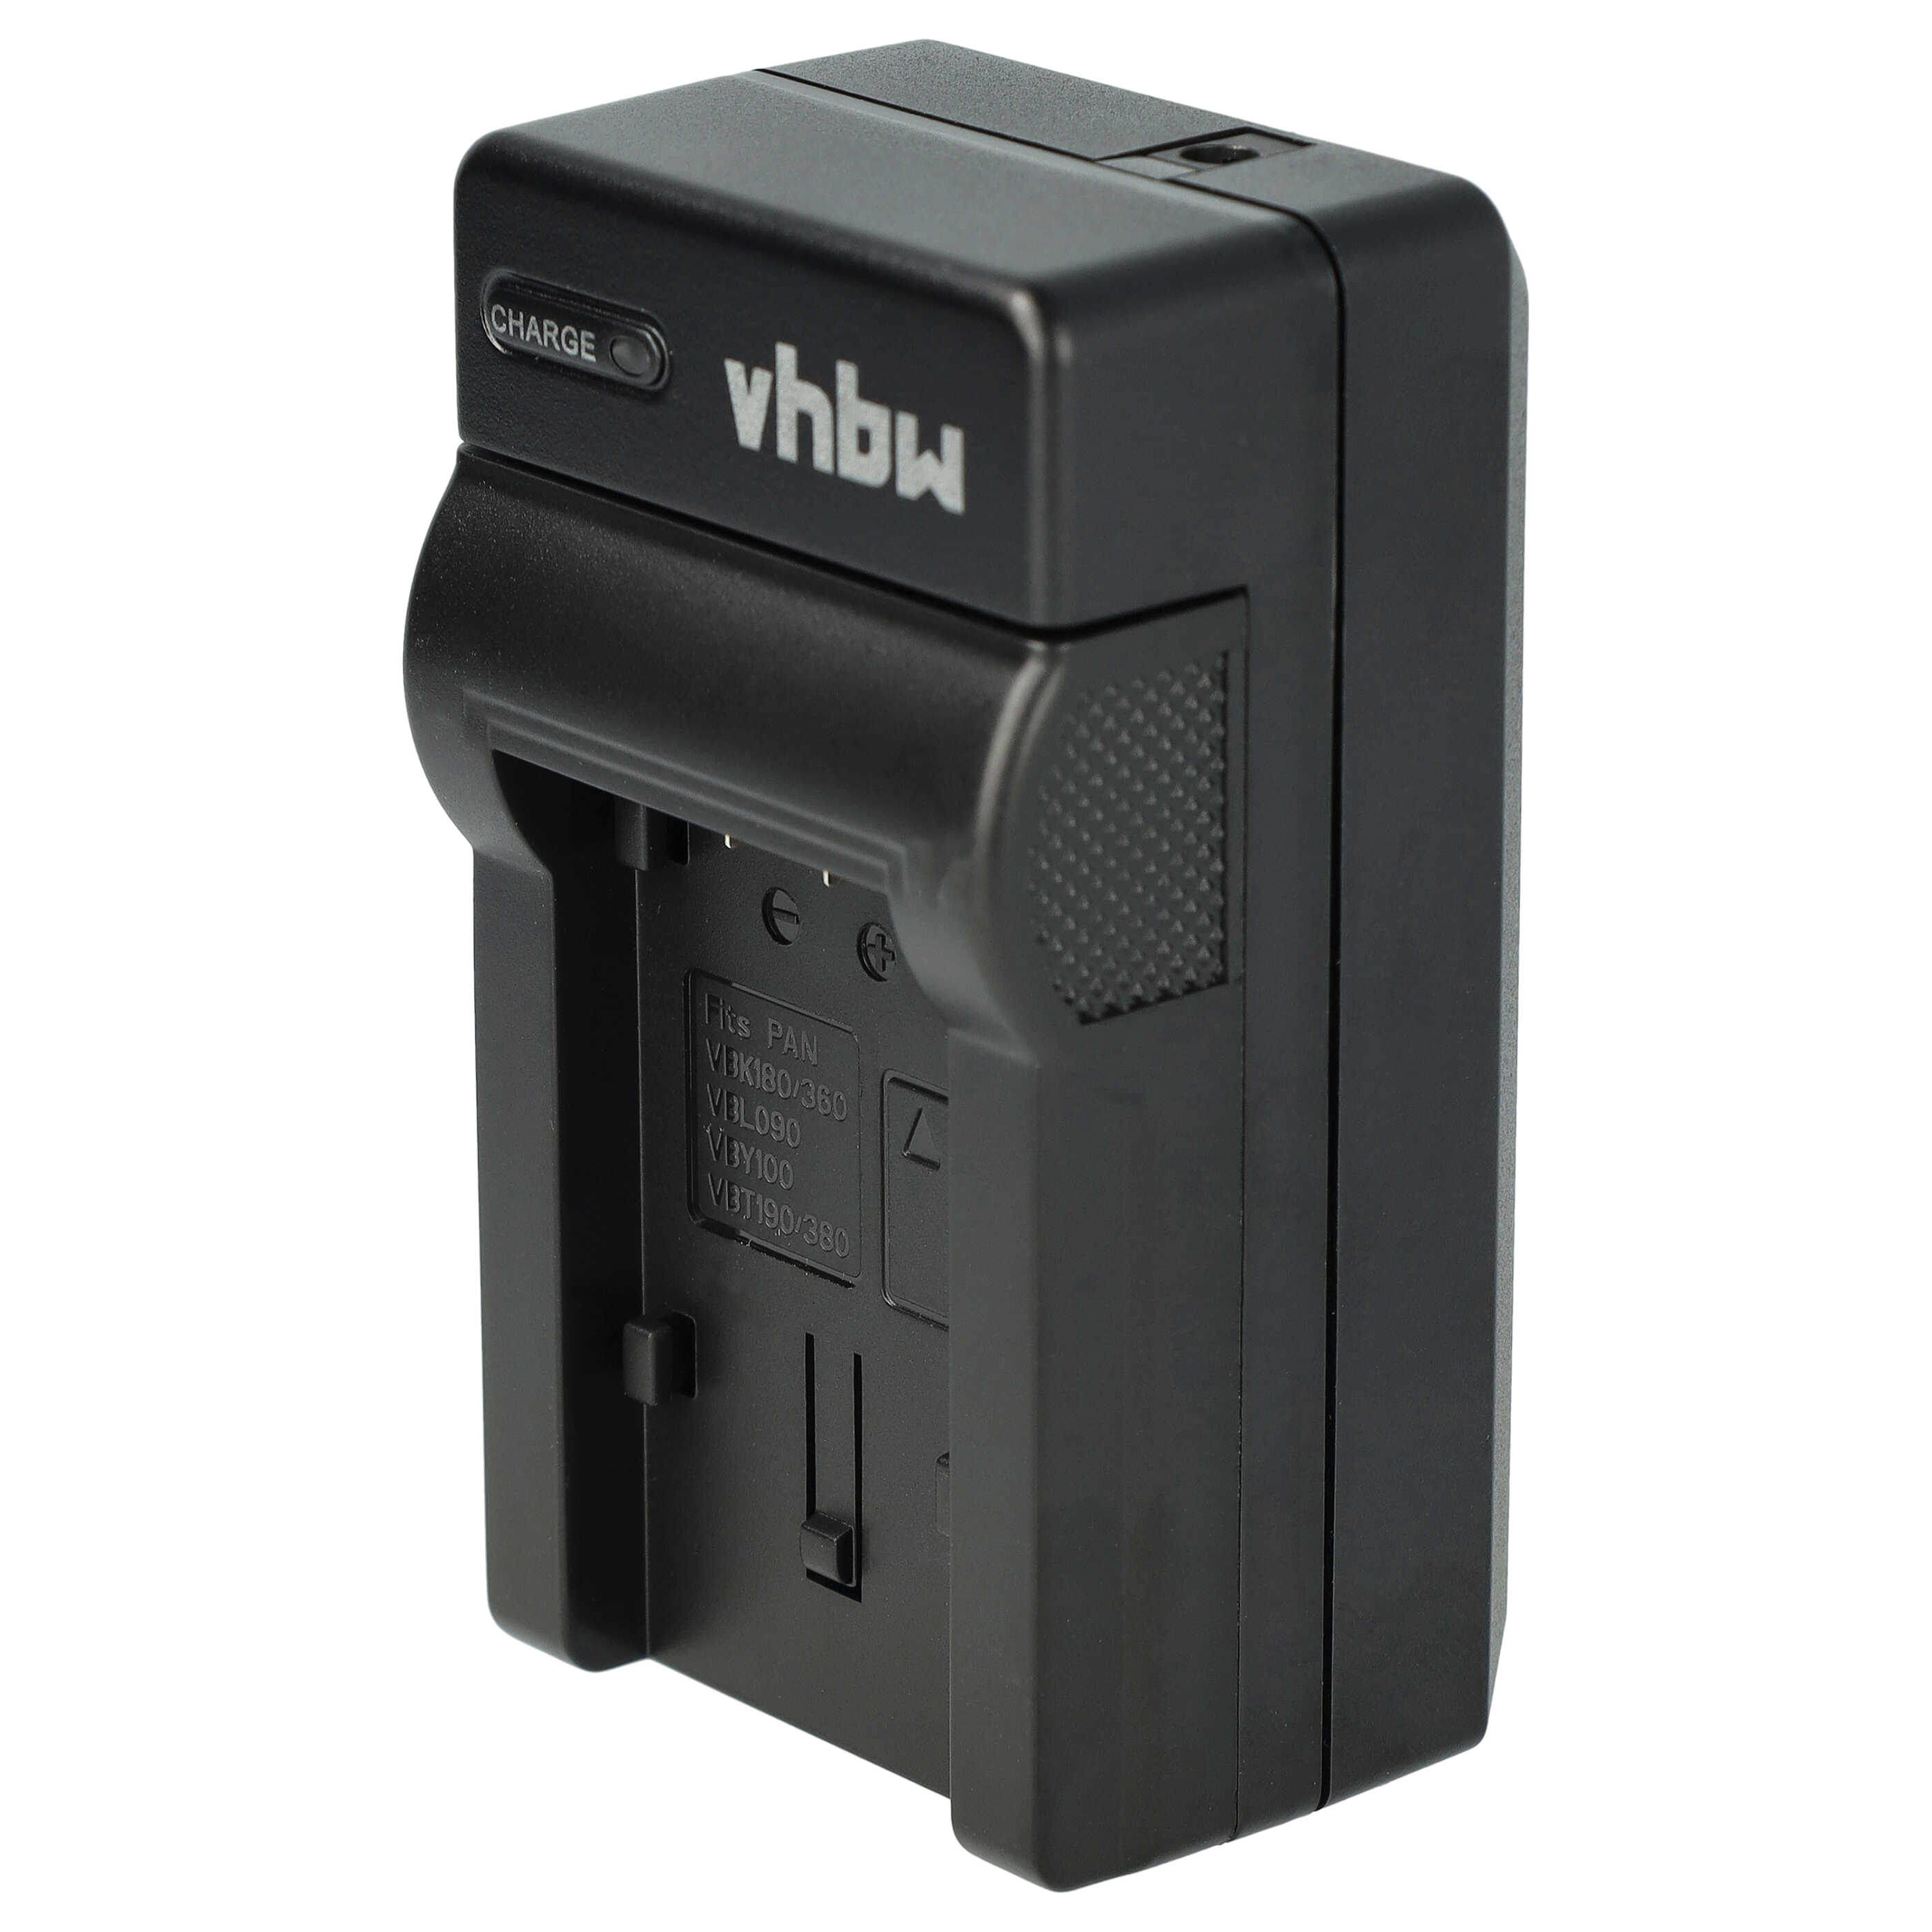 Akku Ladegerät passend für HC-V110 Kamera u.a. - 0,6 A, 4,2 V